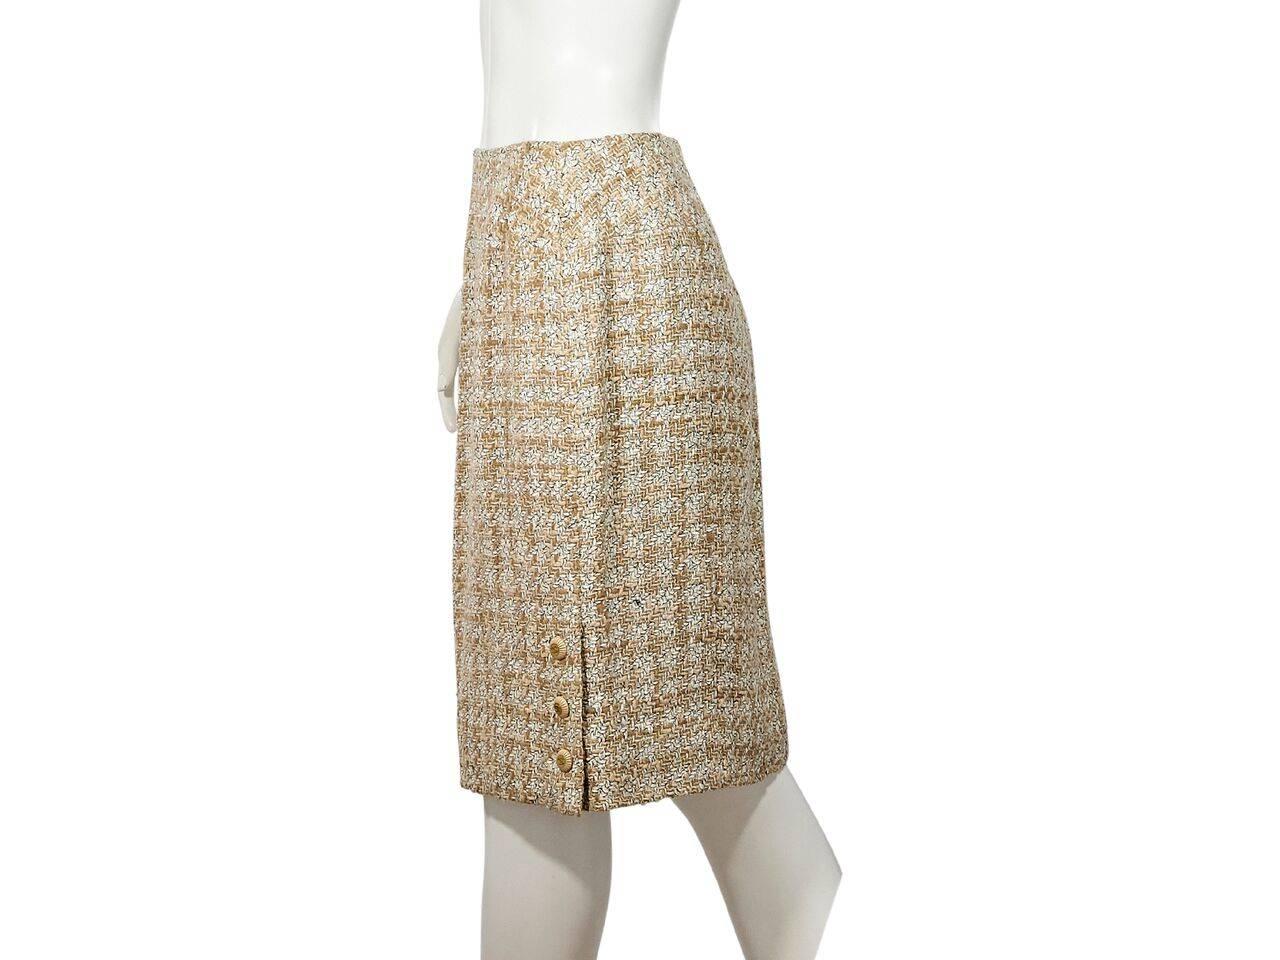 Tan & White Vintage Chanel Tweed Wool Skirt Suit 2